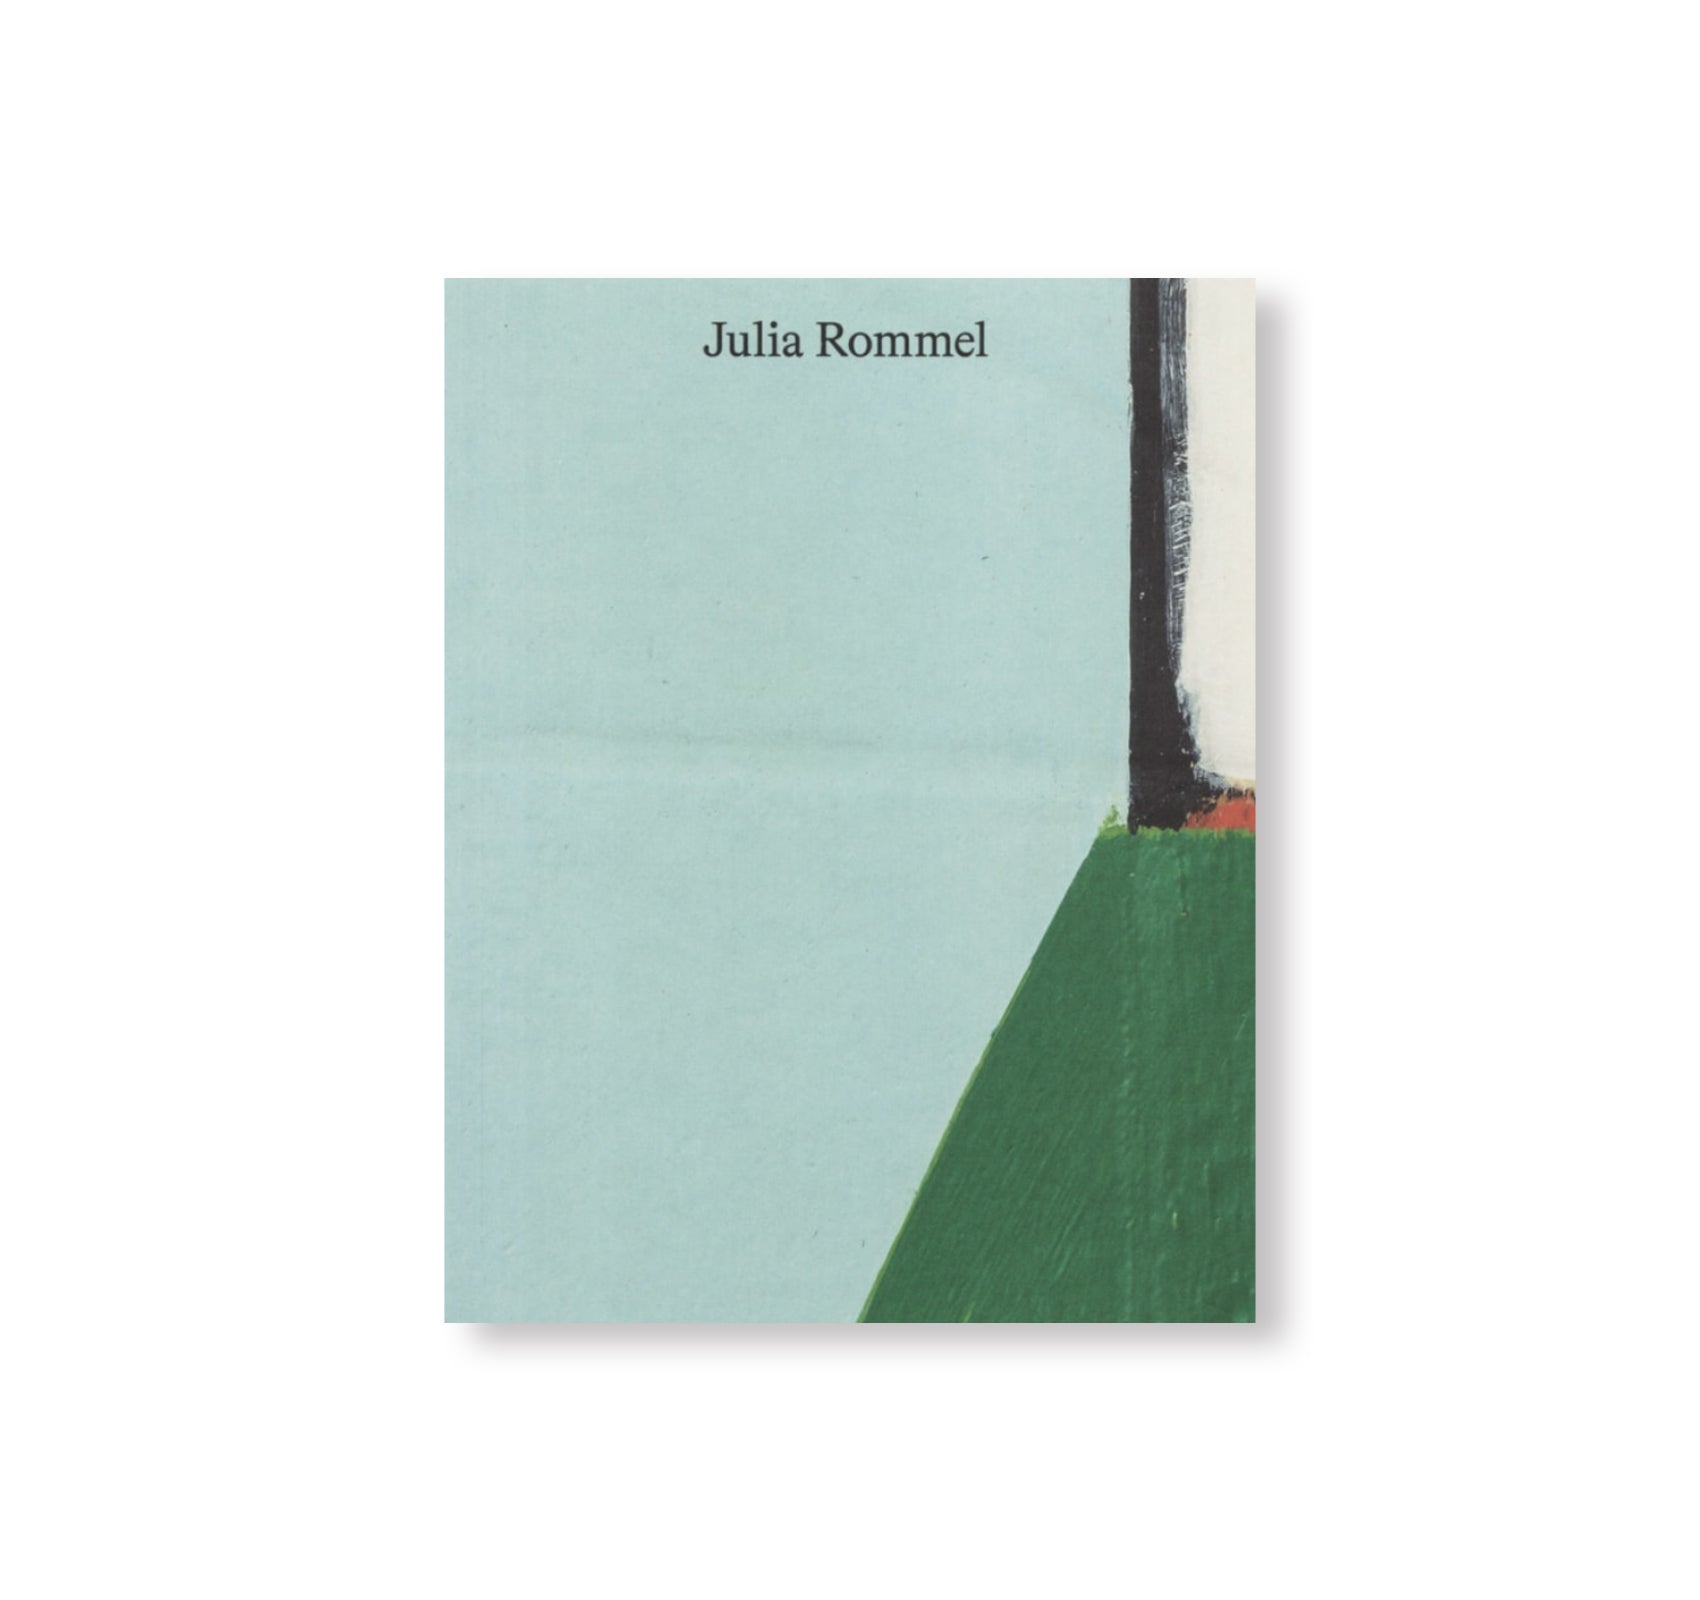 JULIA ROMMEL by Julia Rommel